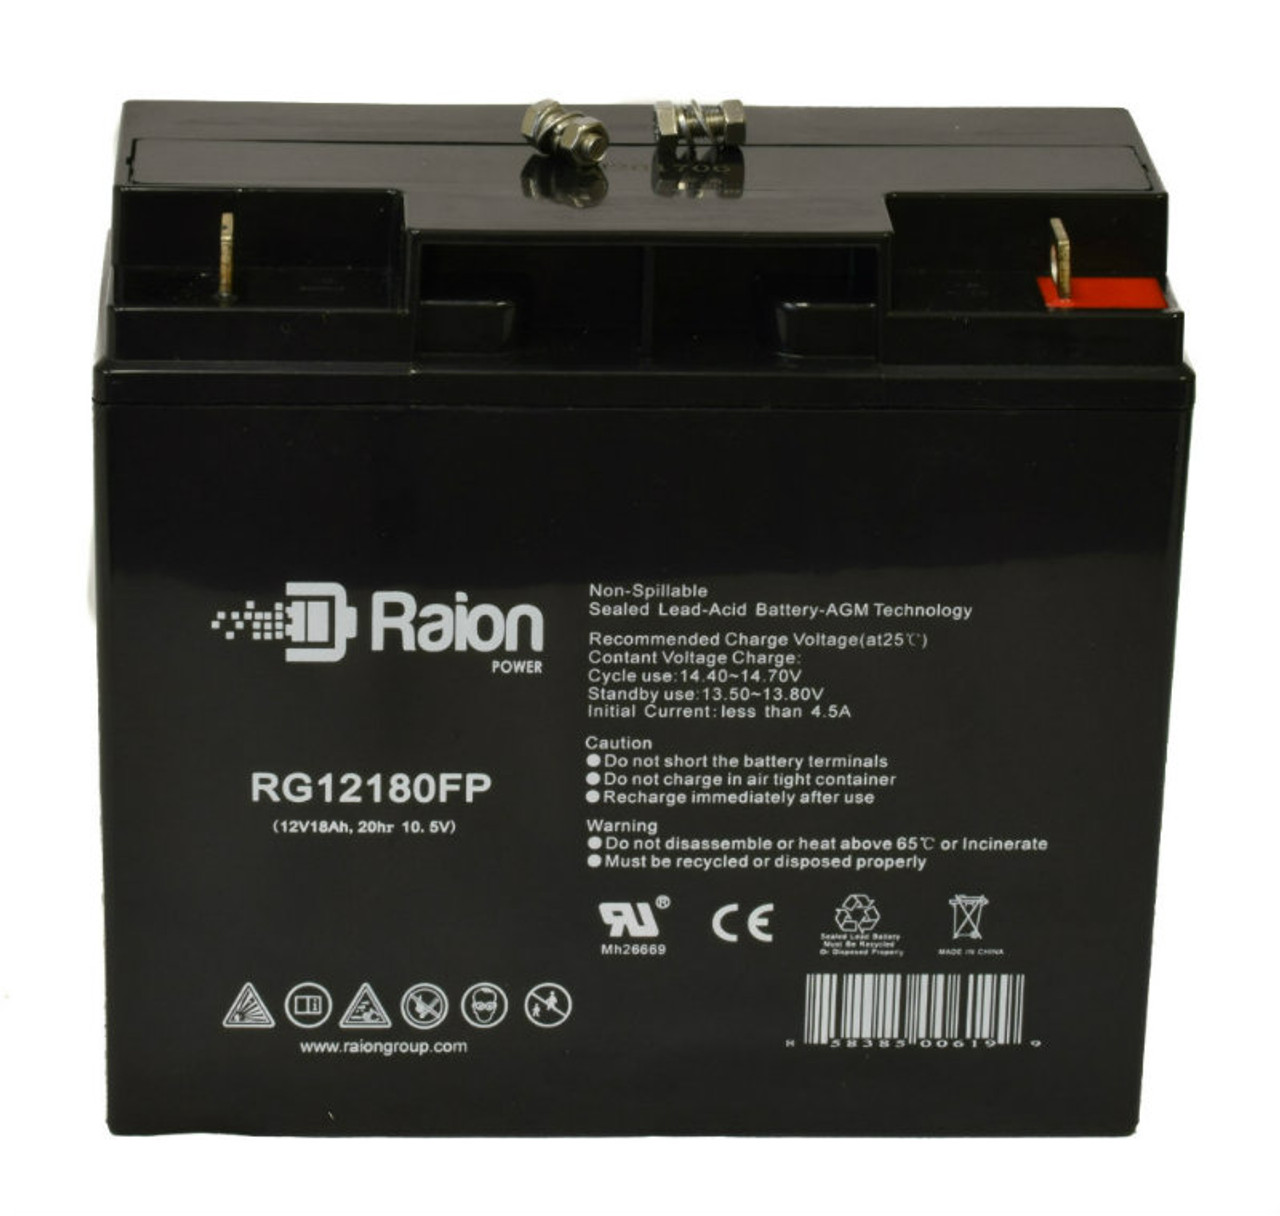 Raion Power RG12180FP 12V 18Ah Lead Acid Battery for BPOWER BPE 18-12